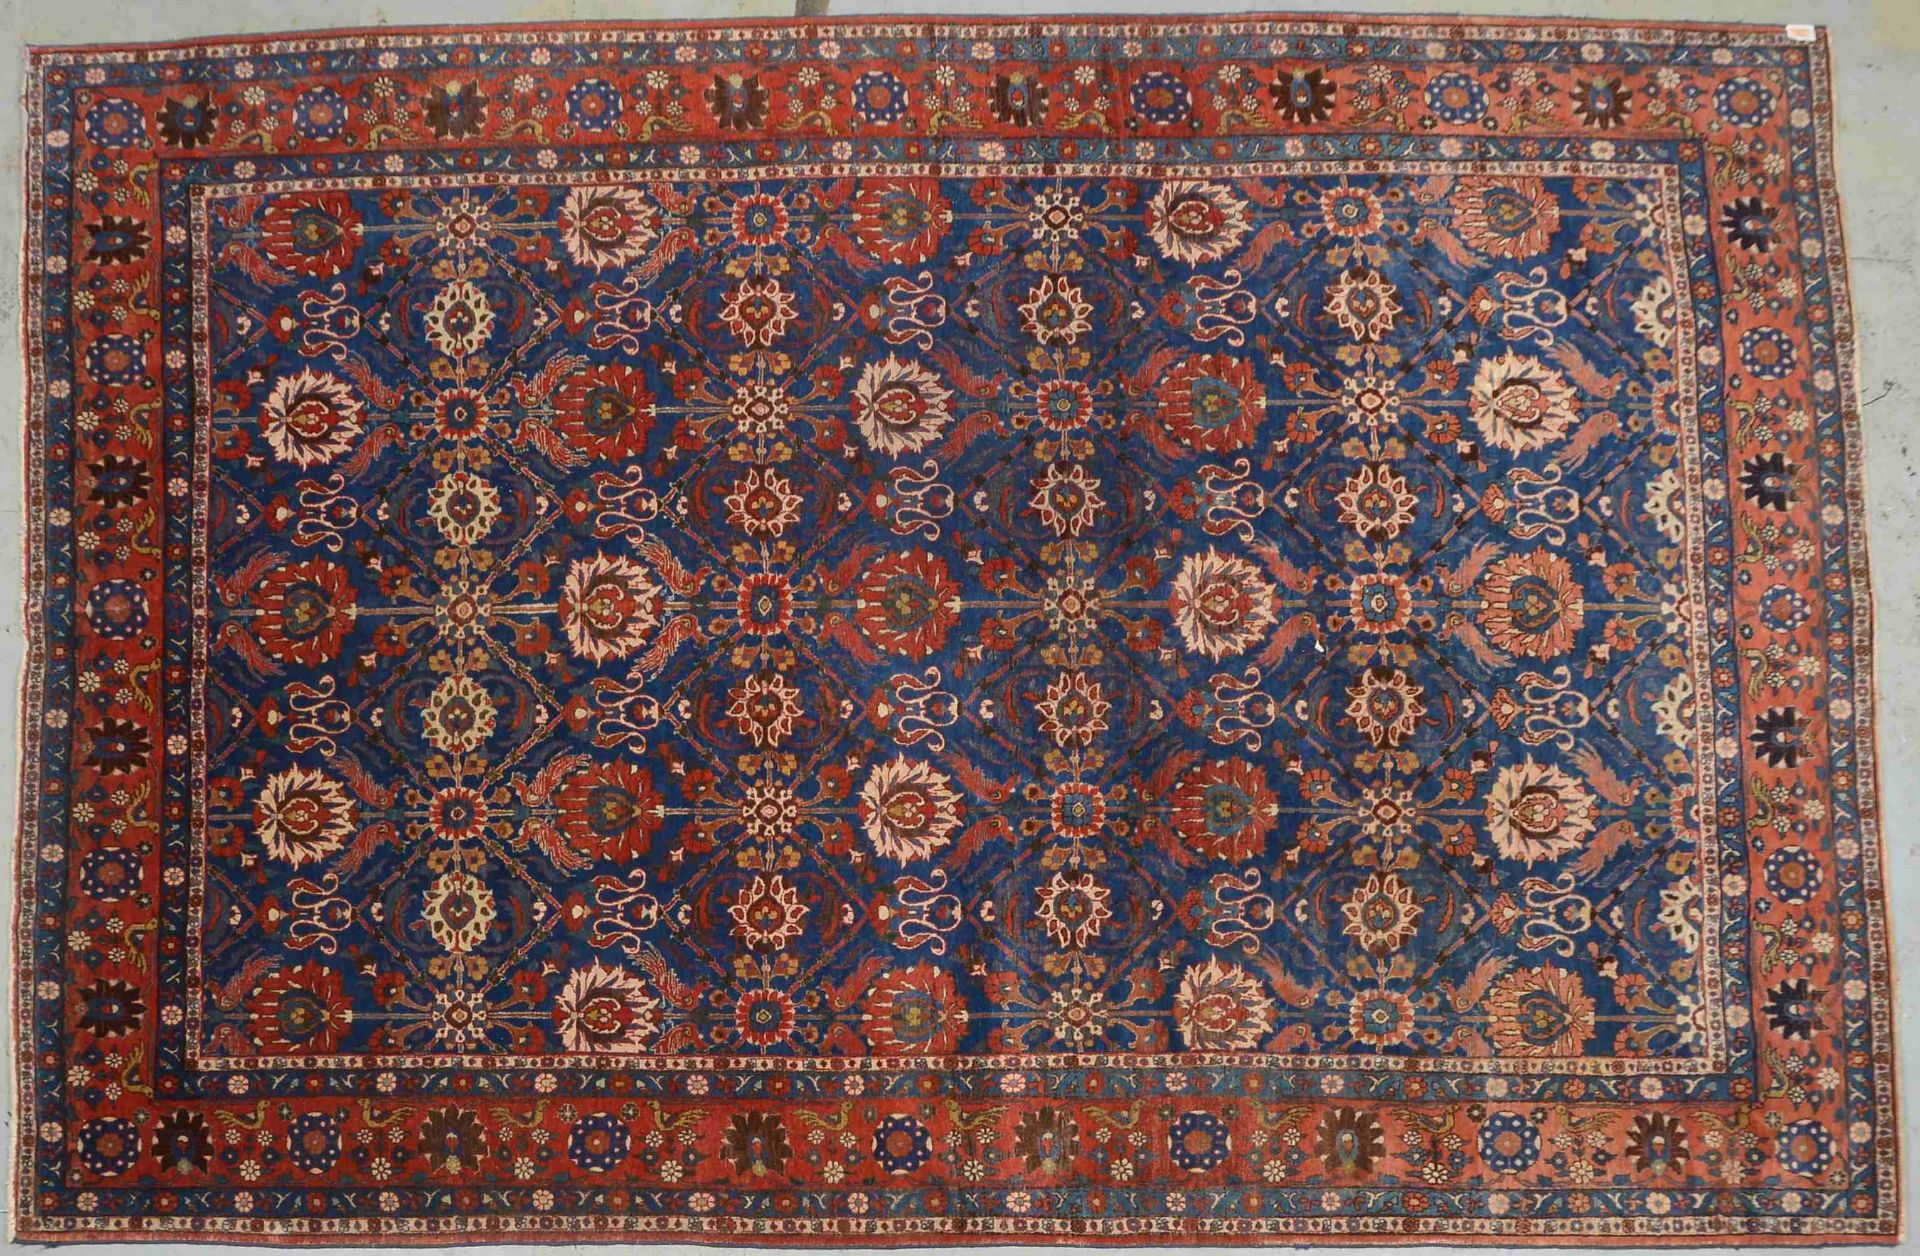 Täbriz-Orientteppich, alt, wasserblauer Fond, mit Palmetten- und Vogelmotiven durchgemustert, Flor i - Bild 2 aus 2